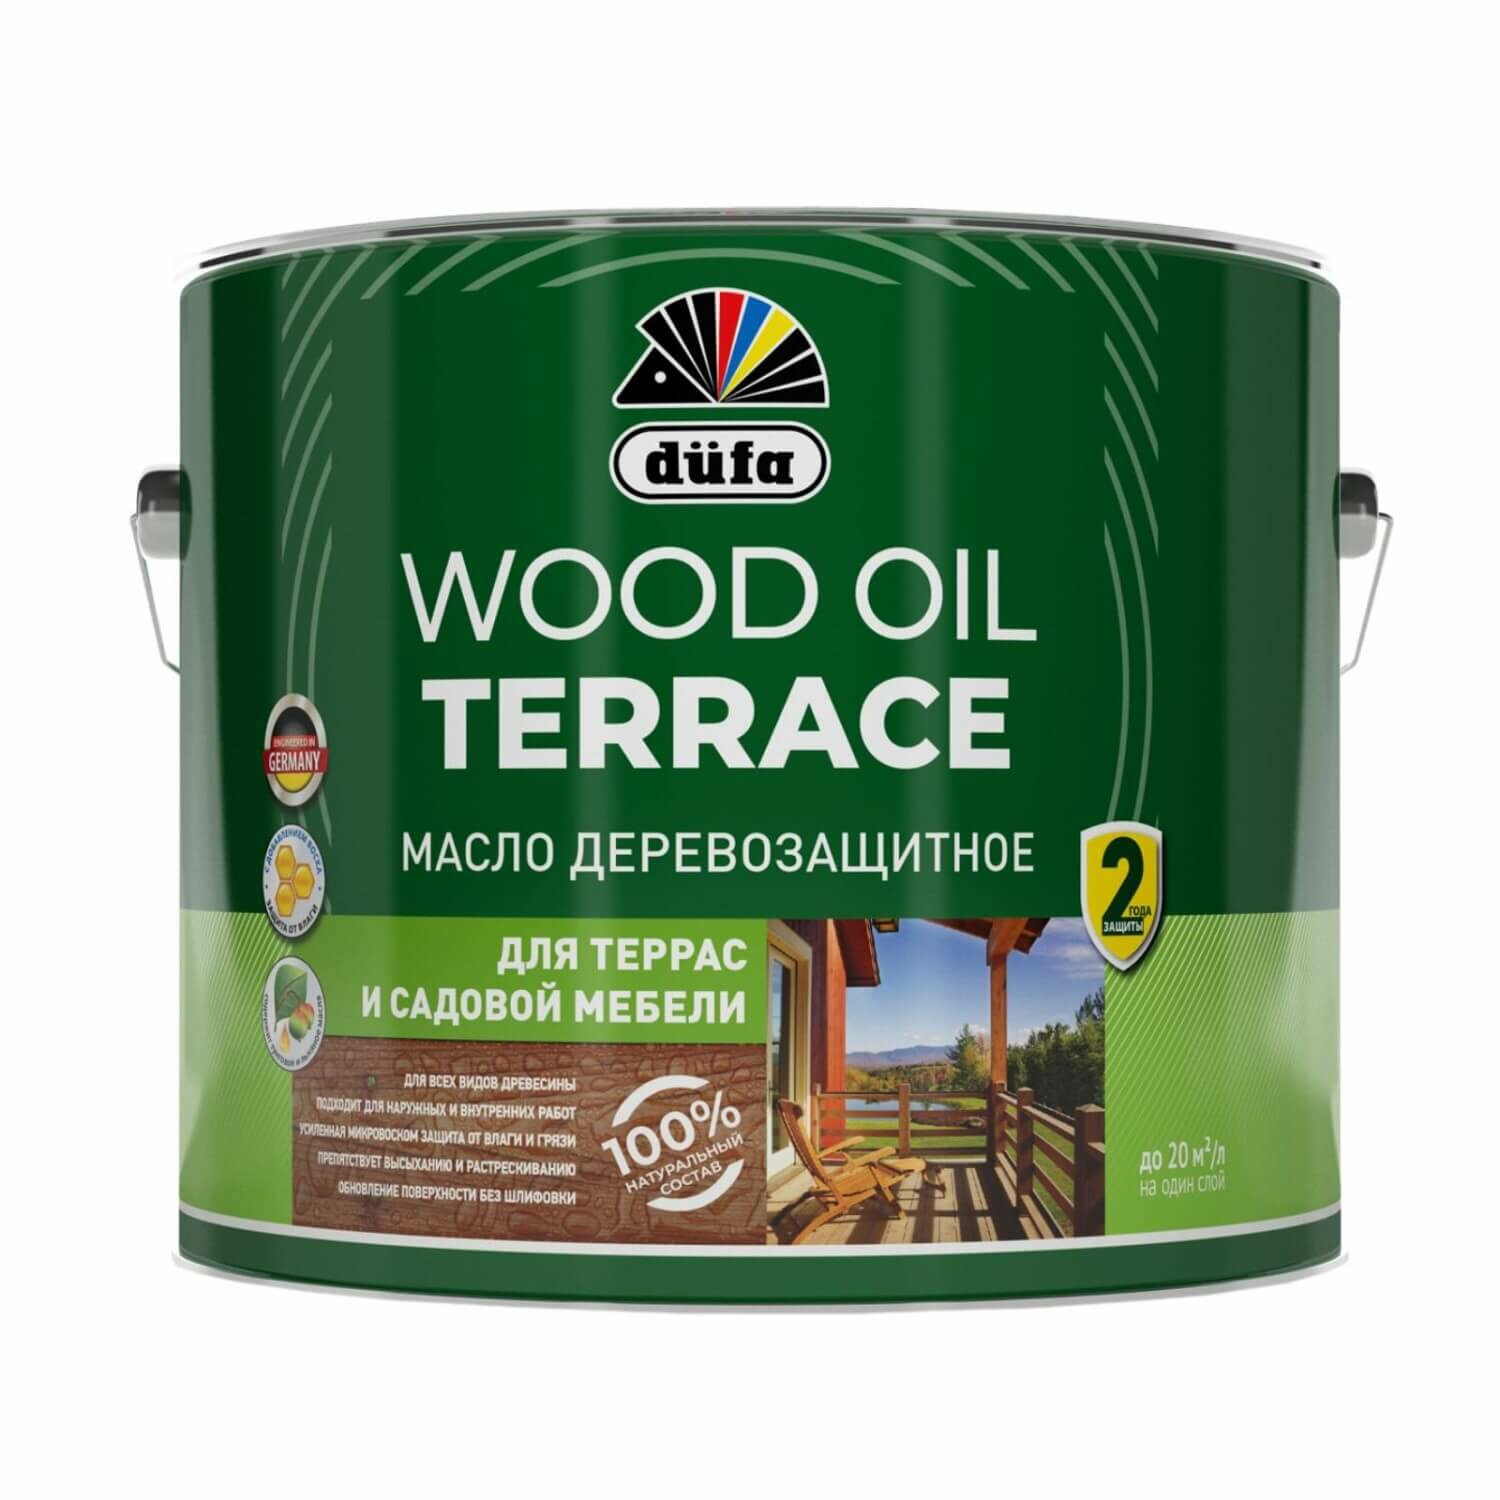 Масло деревозащитное для террас и садовой мебели Dufa Wood Oil Terrace (9л) дуб